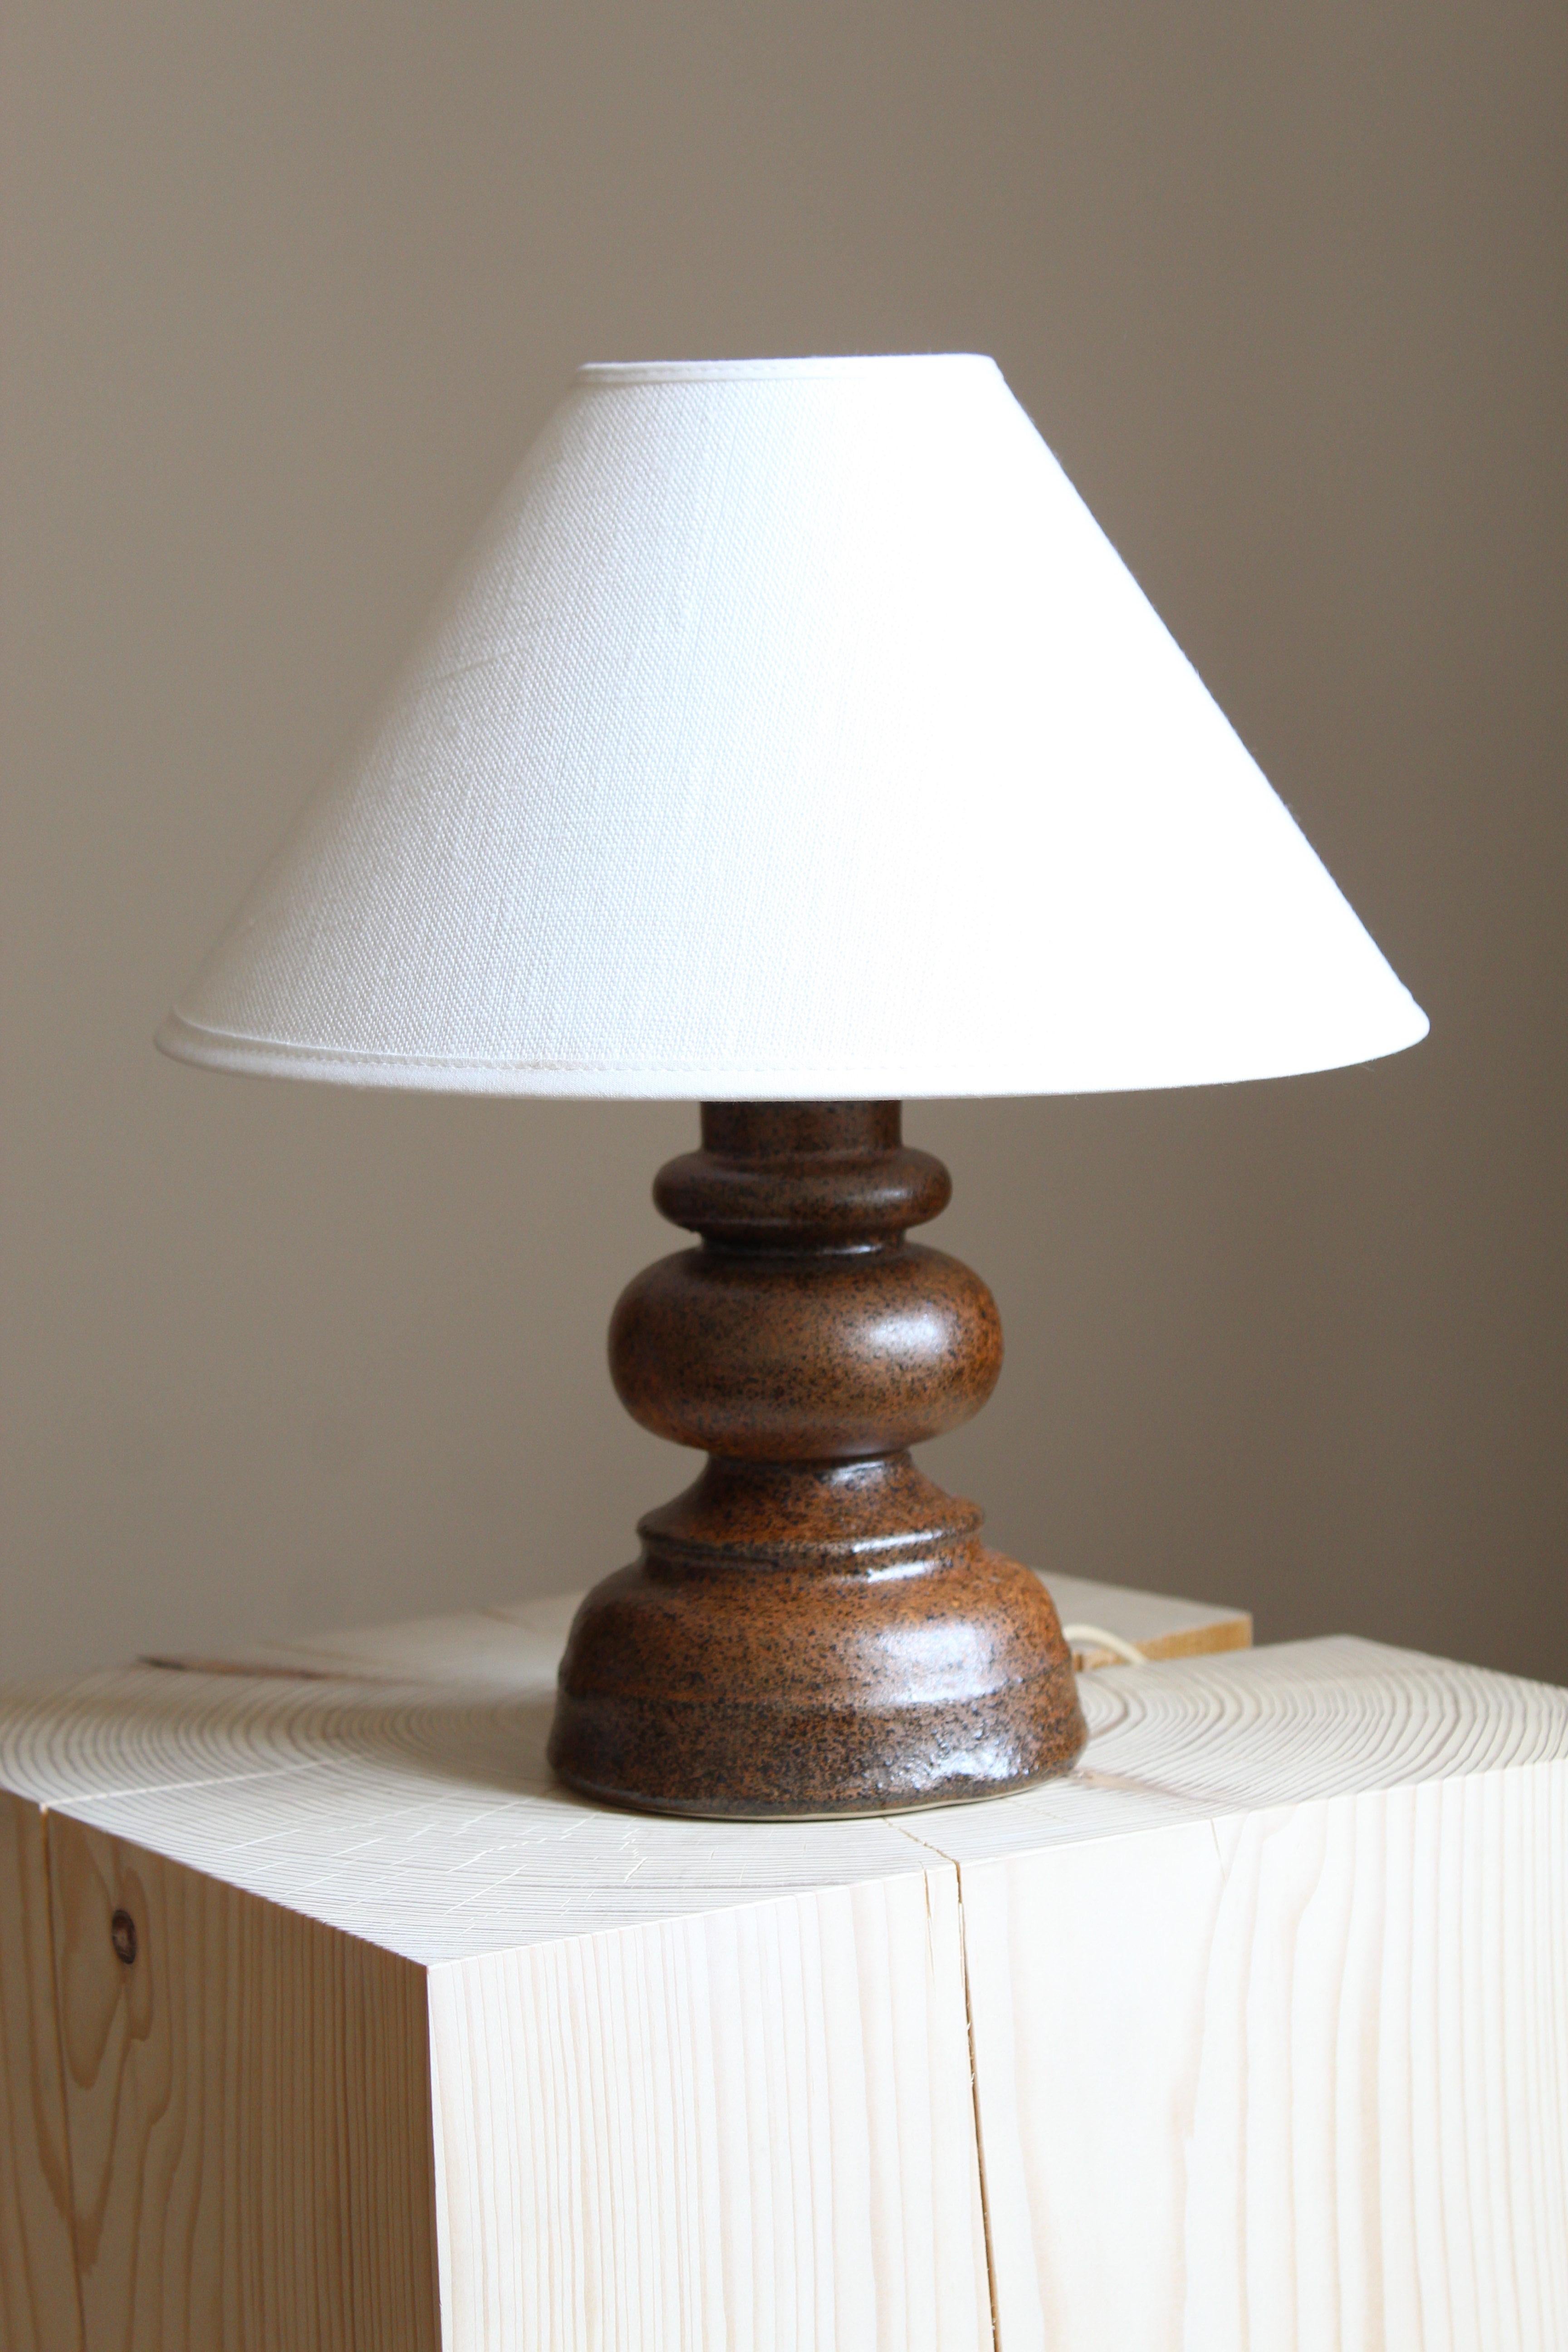 Lampe de table en grès, exécutée par Bruno Karlsson dans une forme abstraite et une glaçure brune très artistique. Dans son Studio, appelé 